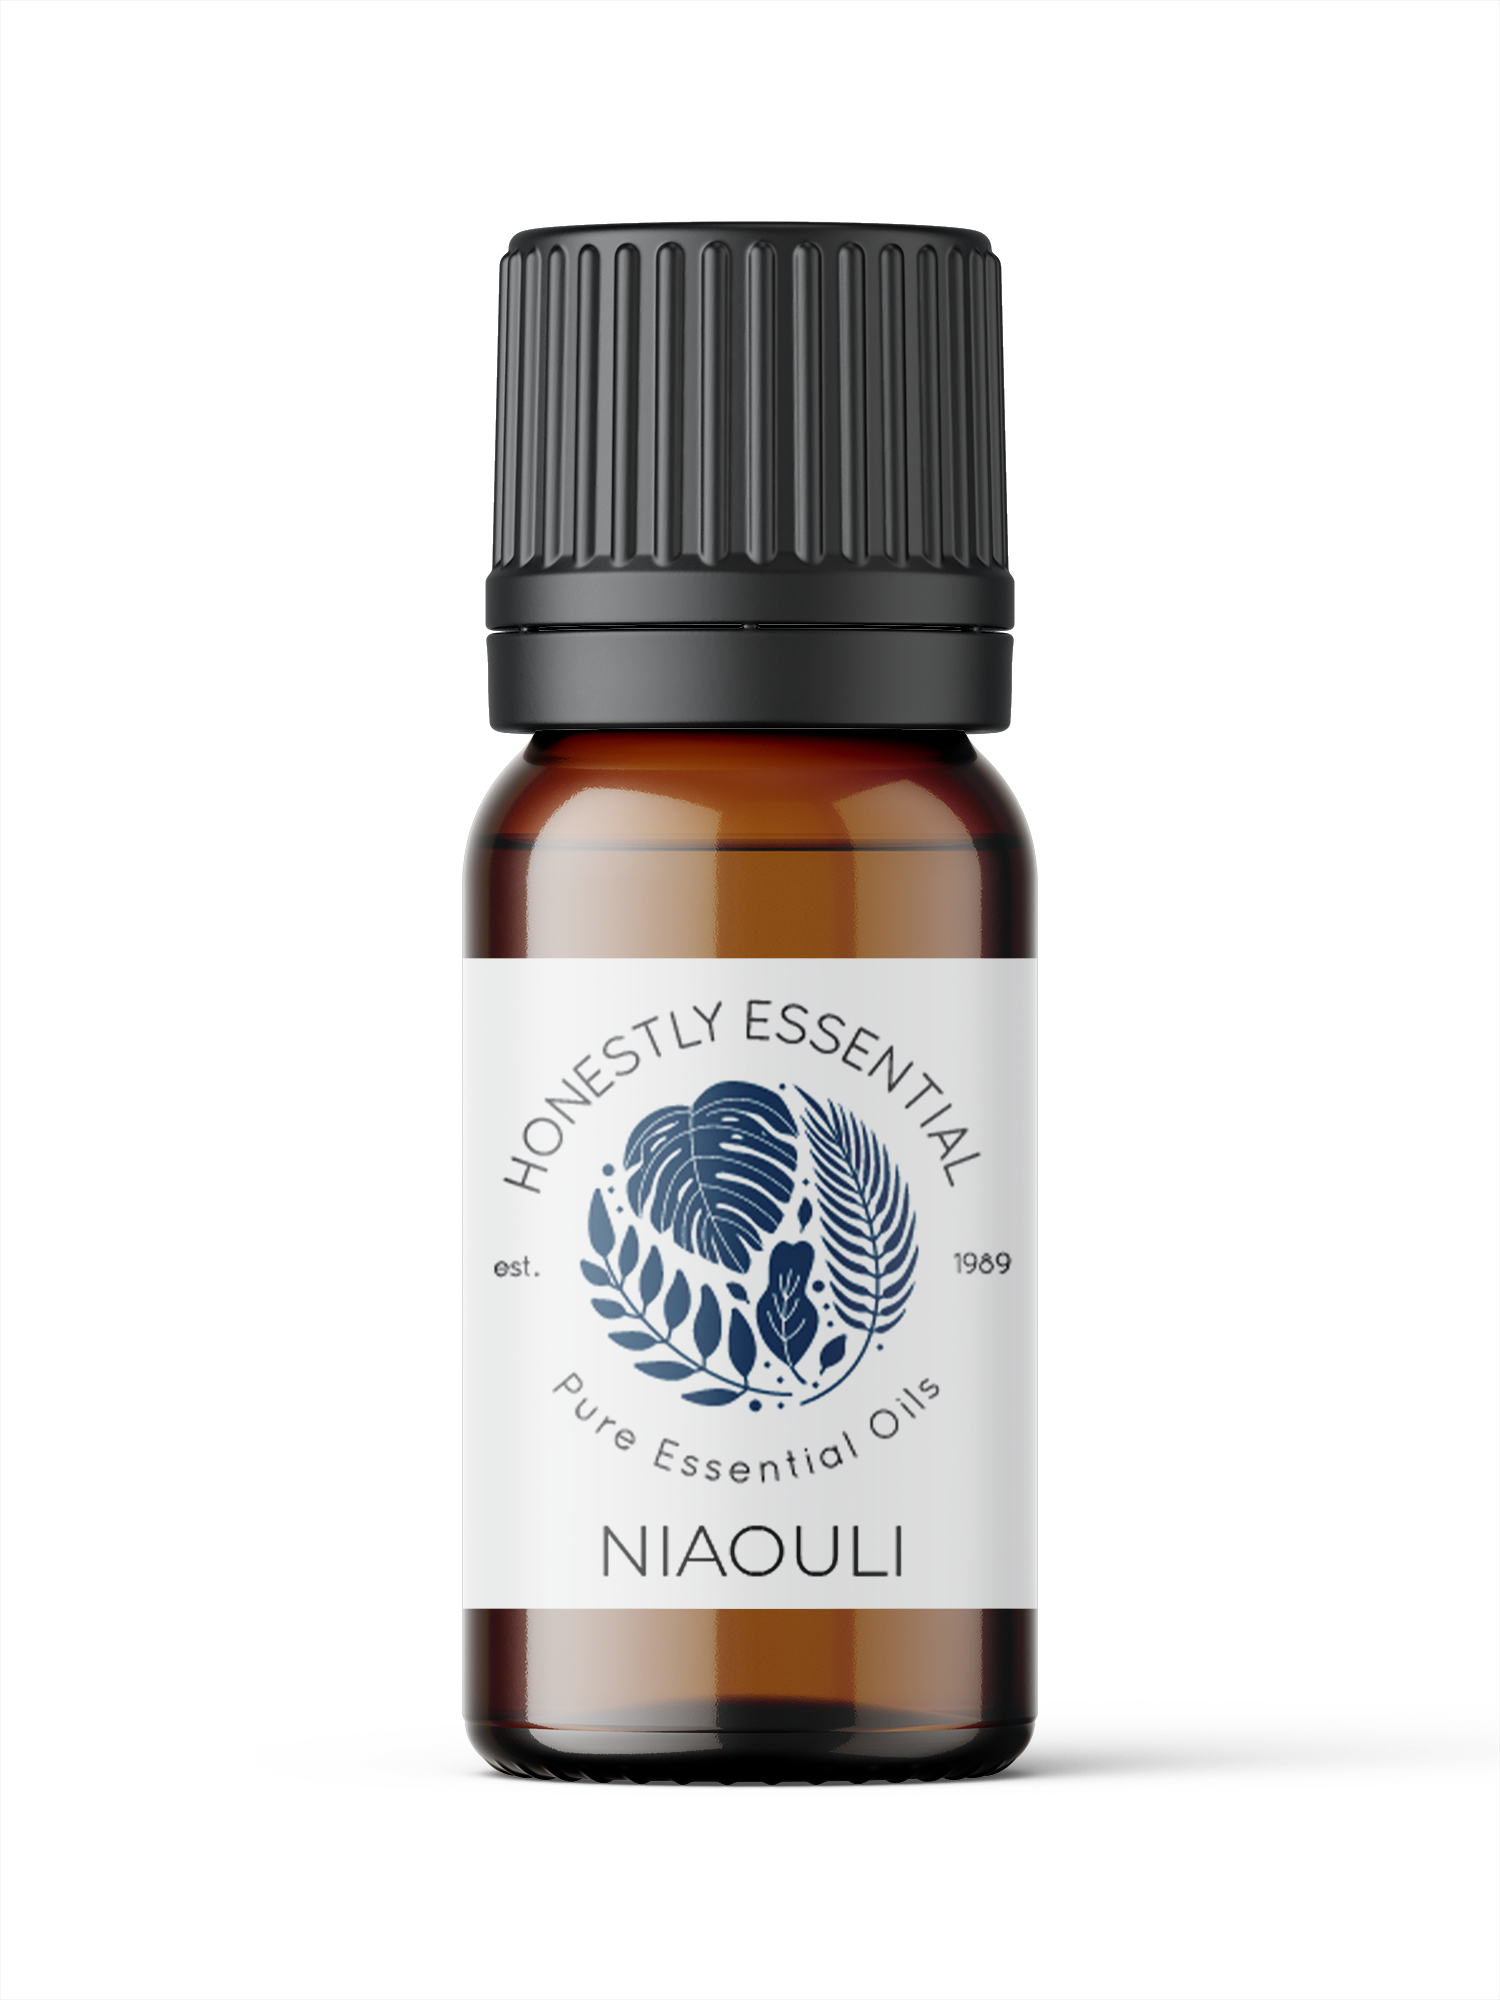 Niaouli Essential Oil - Essential Oils | Honestly Essential Oils child, essential, immunity, kid, kid safe, kosher, niaouli, oil, safe, tree, tree essential oil, trees, vegan